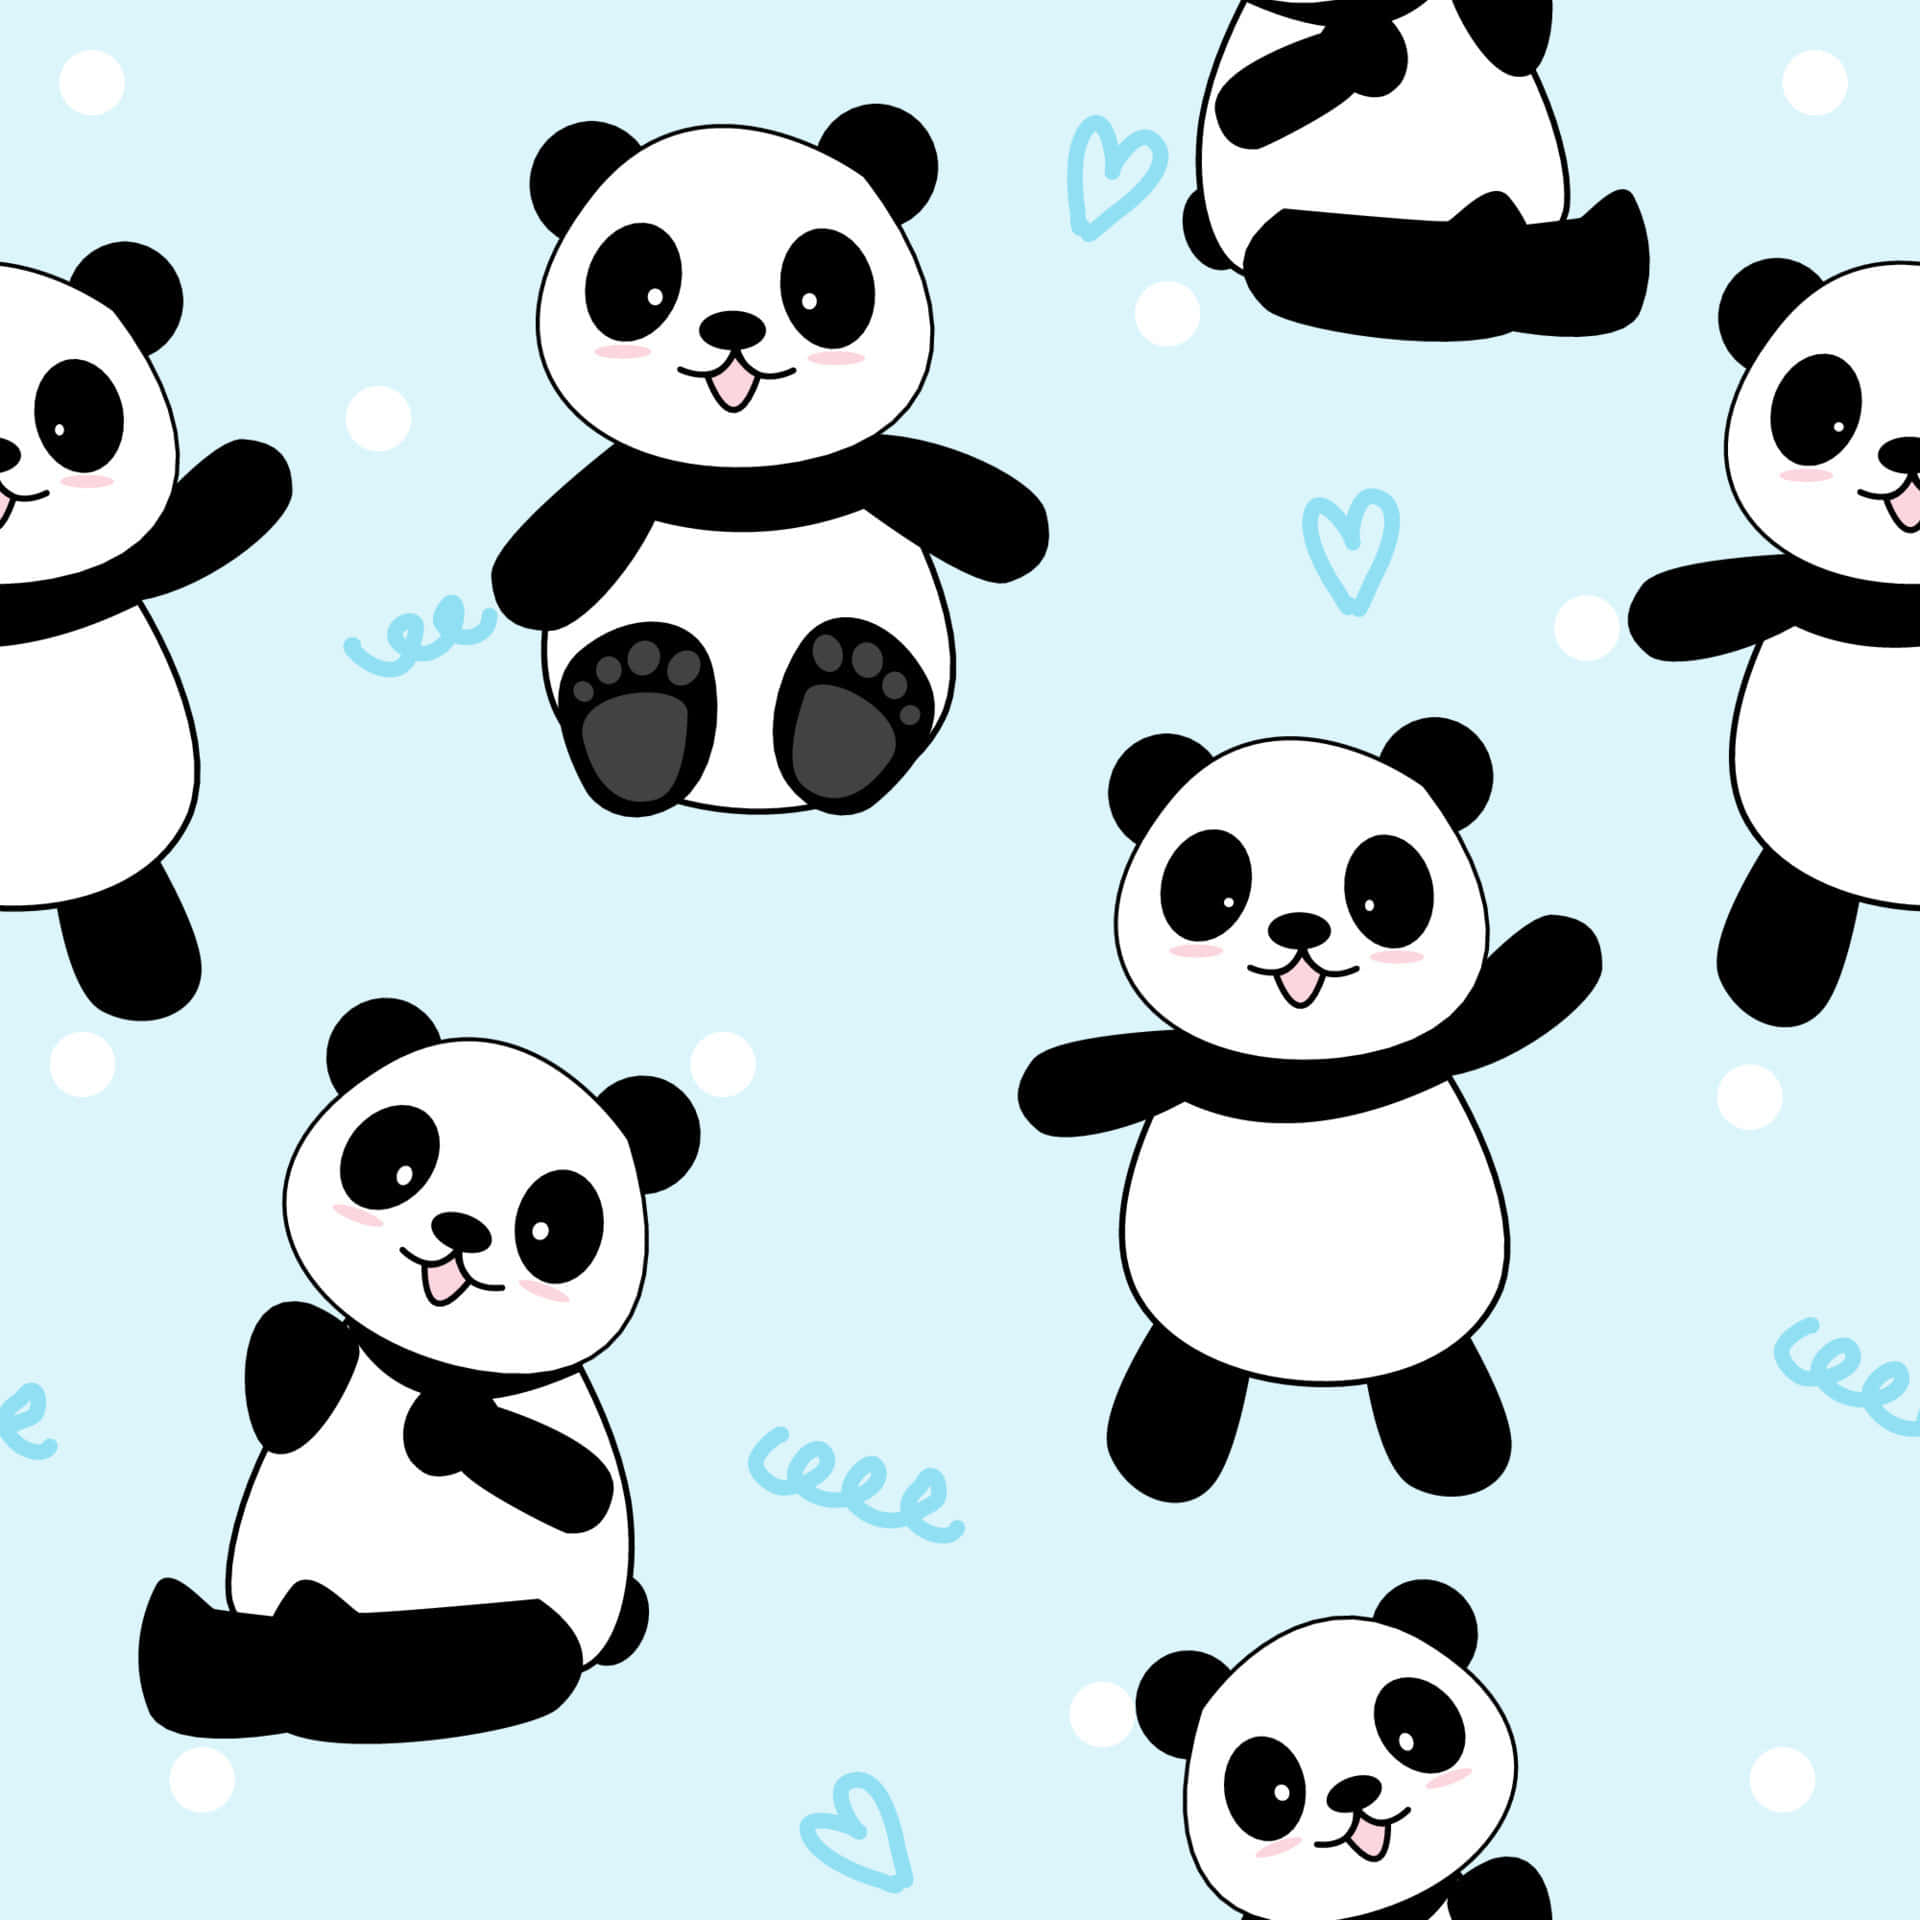 Einemädchenhafte Panda Zeigt Stolz Ihr Schönes Lächeln Und Eine Modische Polka-dot-schleife! Wallpaper